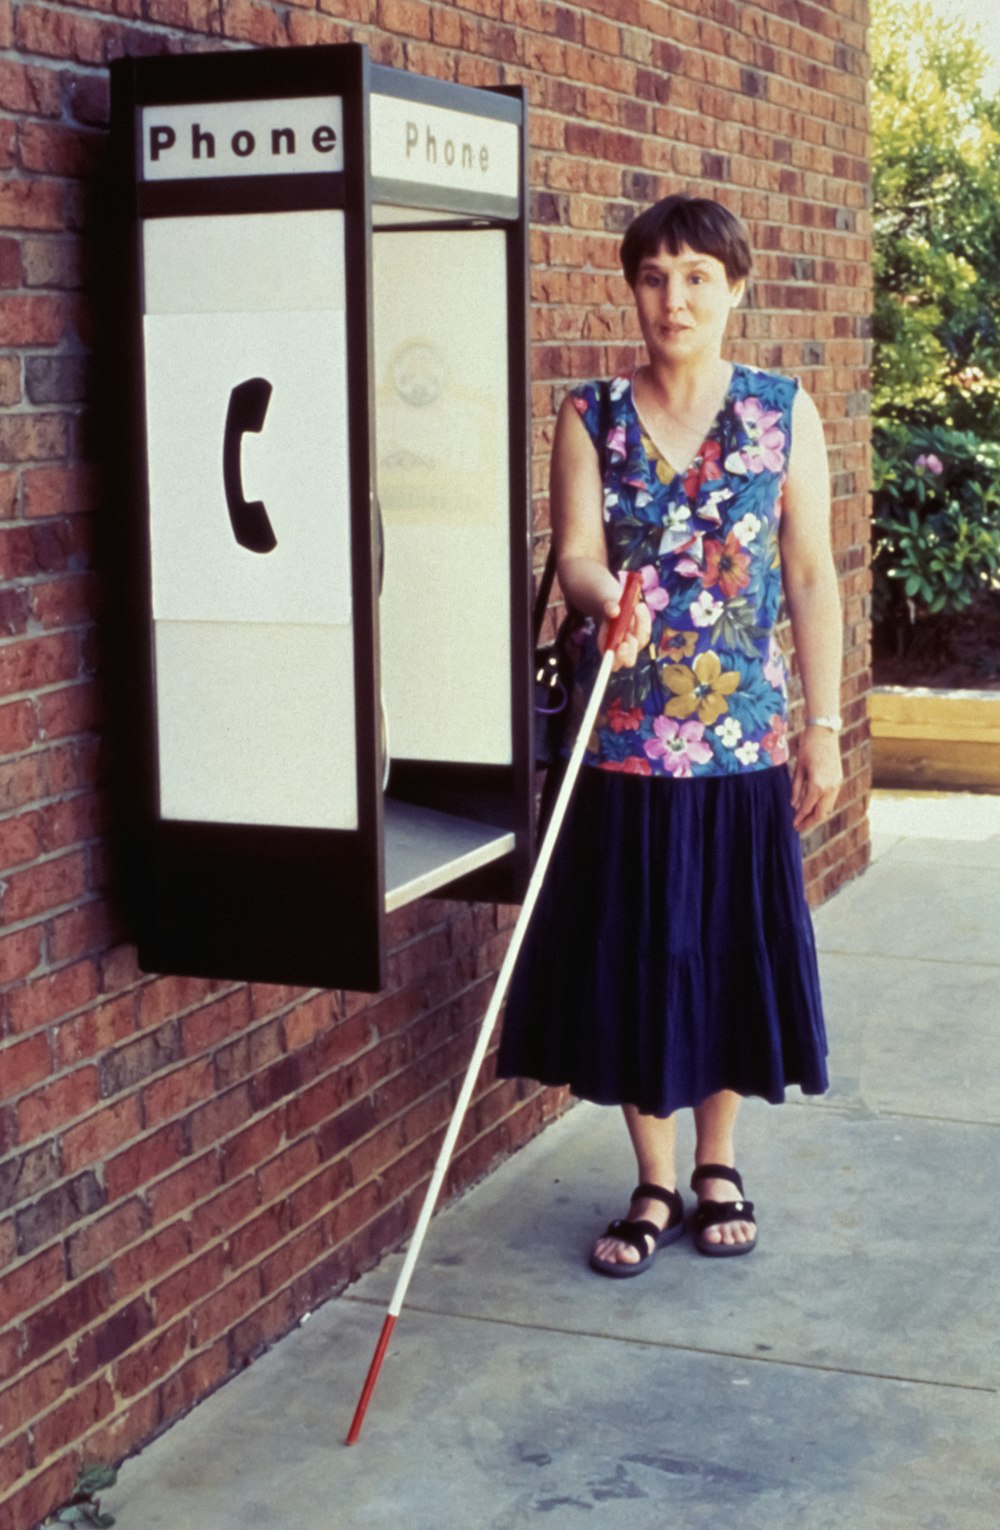 Une femme debout à côté d’une cabine téléphonique